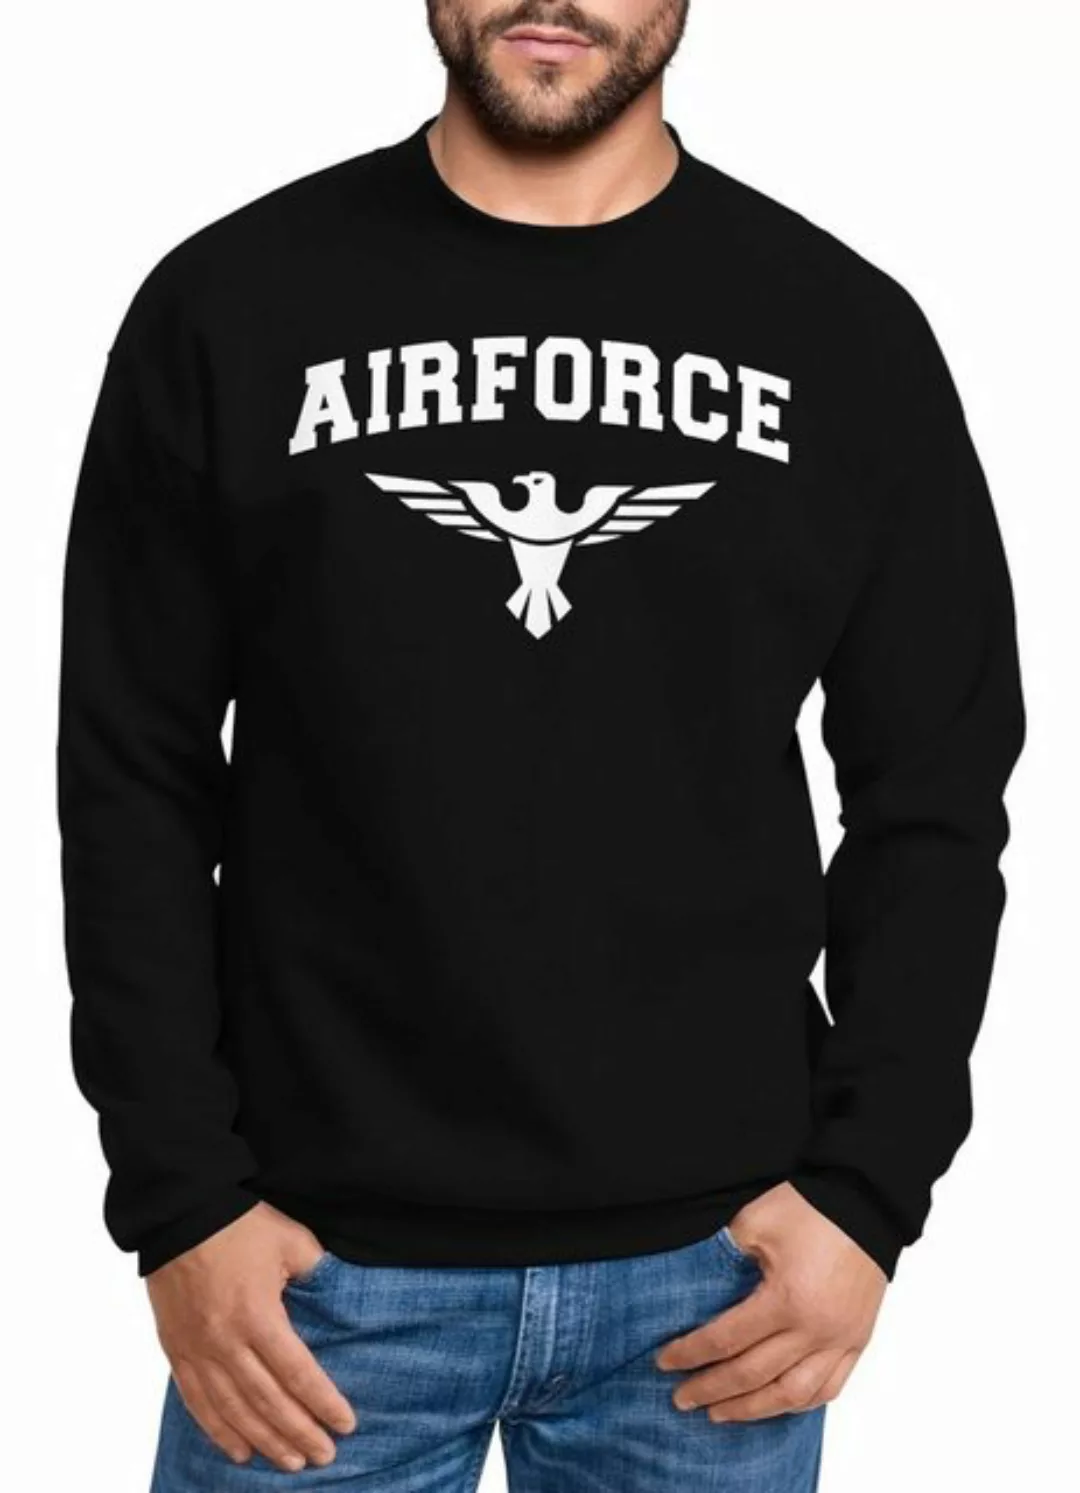 Neverless Sweatshirt Sweatshirt Herren Airforce US Army Adler Militär Schri günstig online kaufen